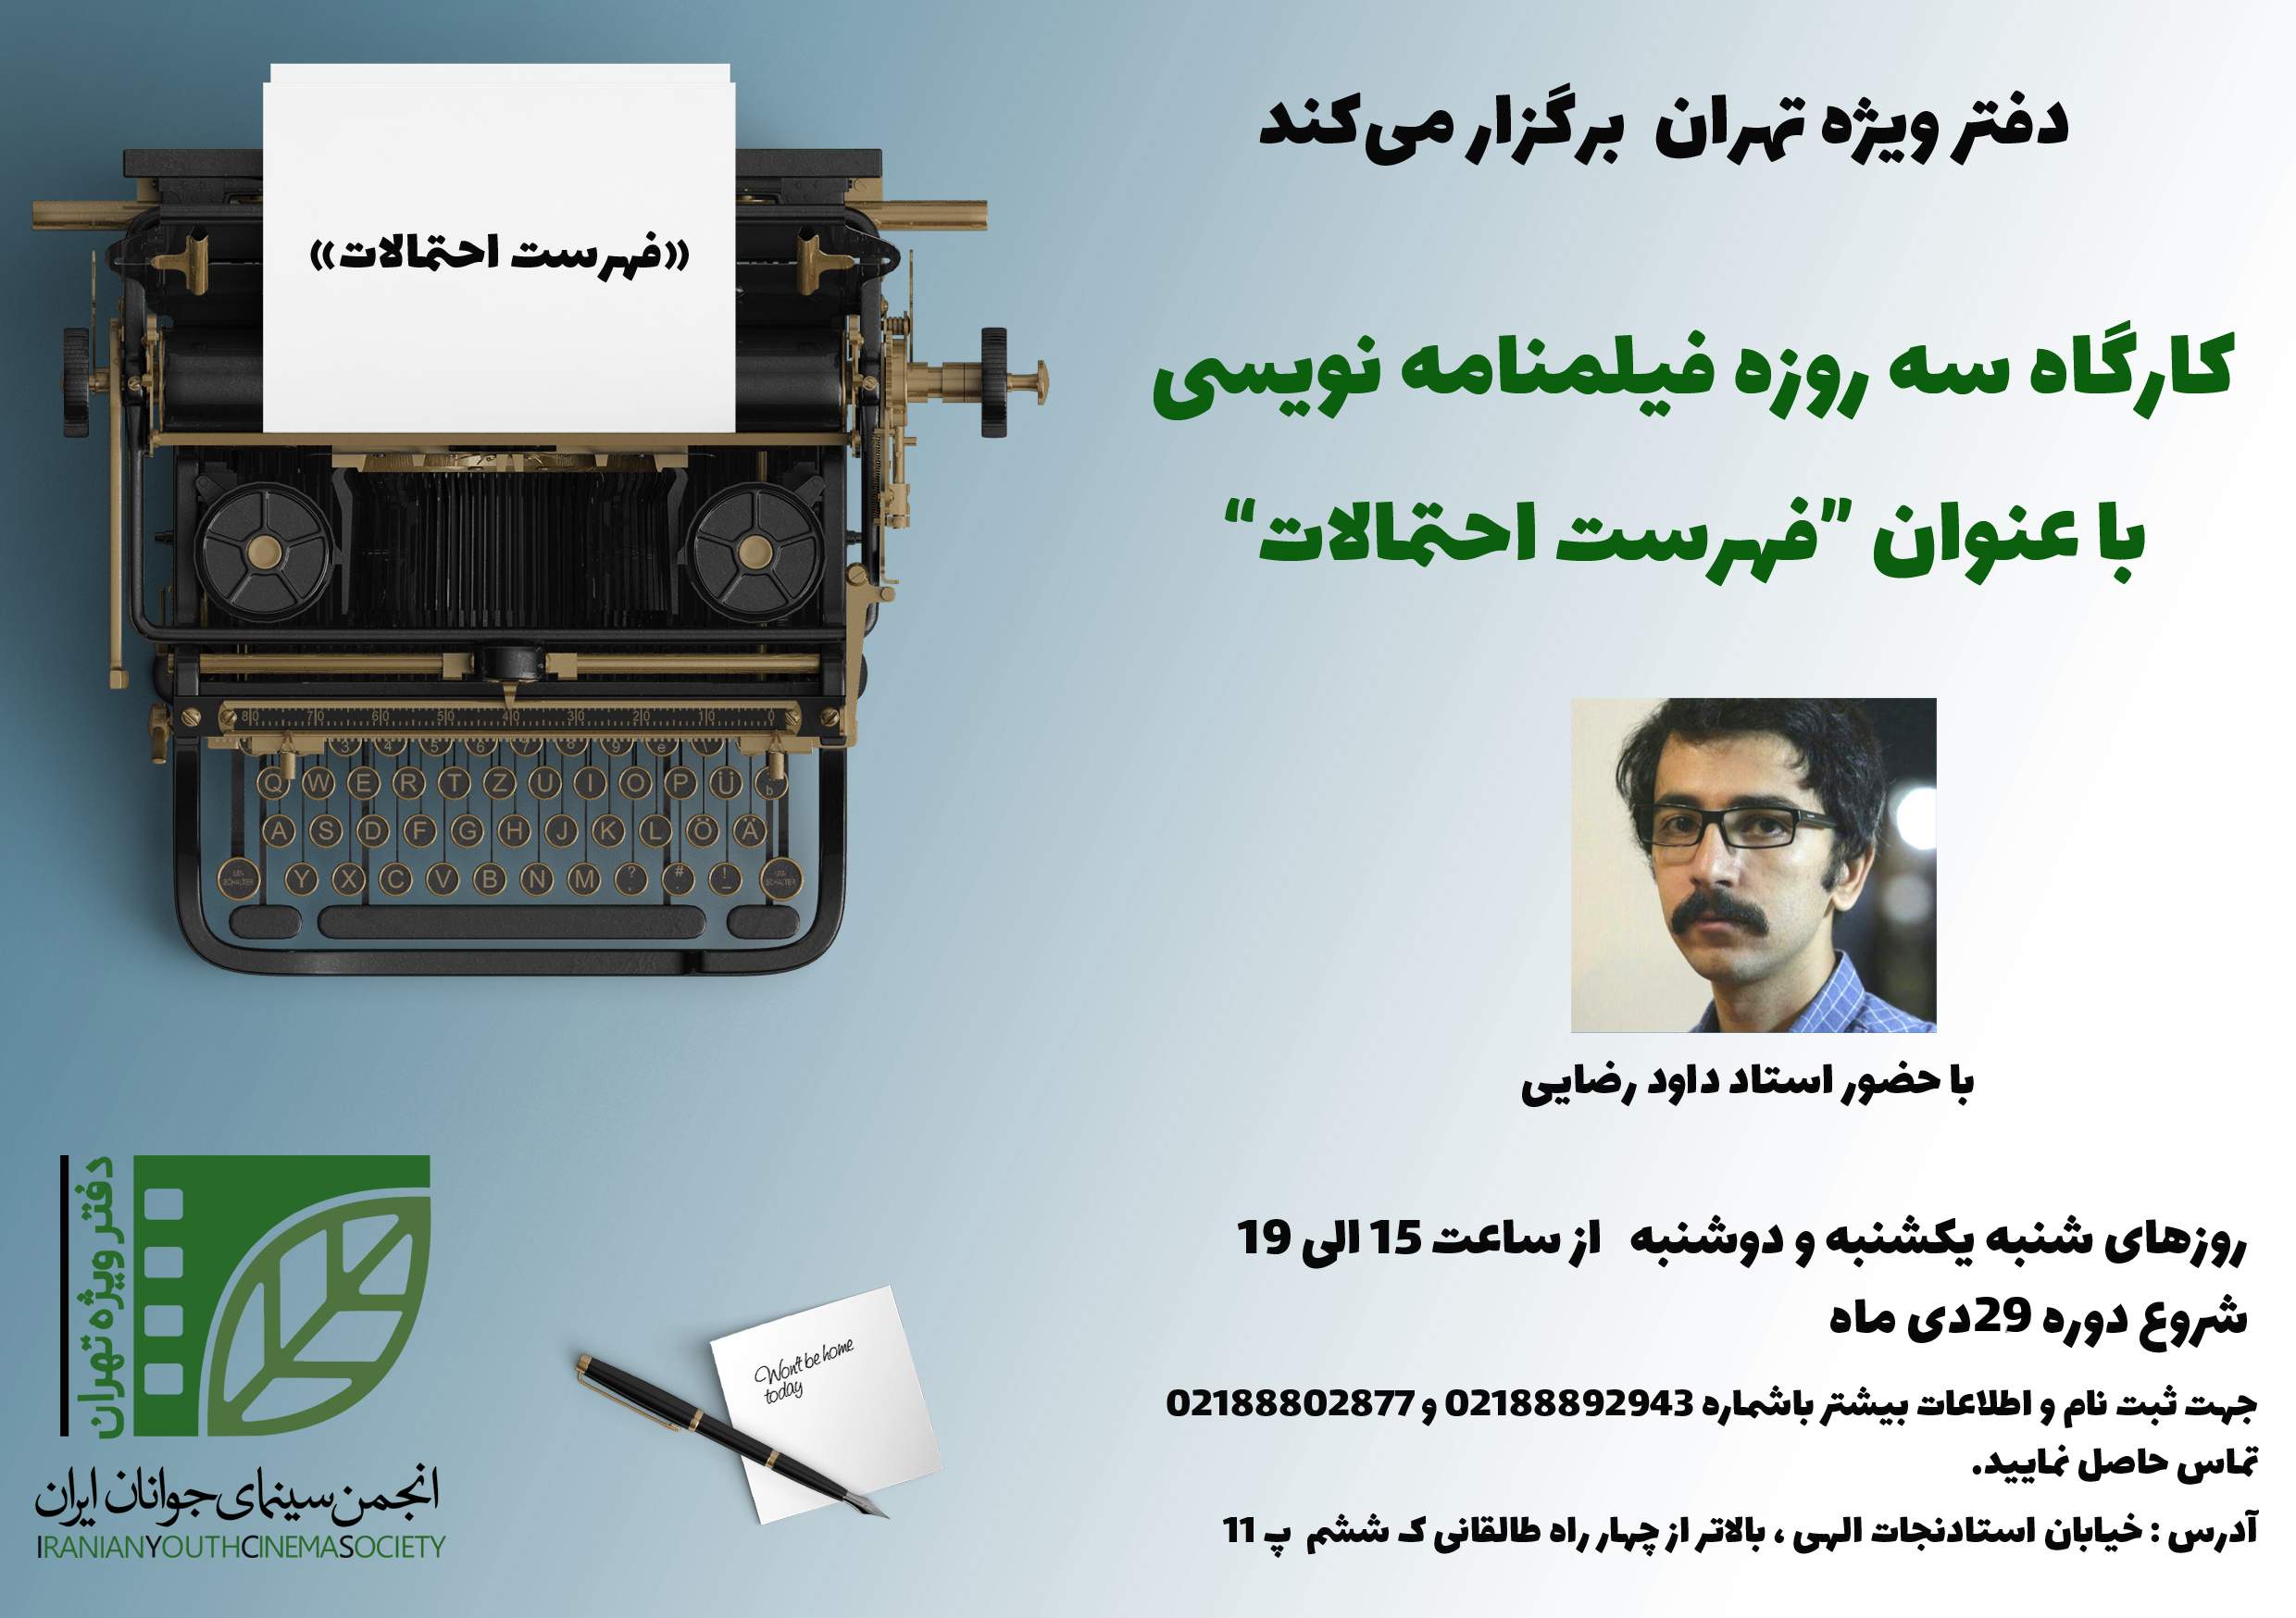 انجمن سینمای جوان  – دفتر ویژه تهران برگزار می‌کند: کارگاه سه روزه فیلمنامه نویسی با عنوان «فهرست احتمالات»